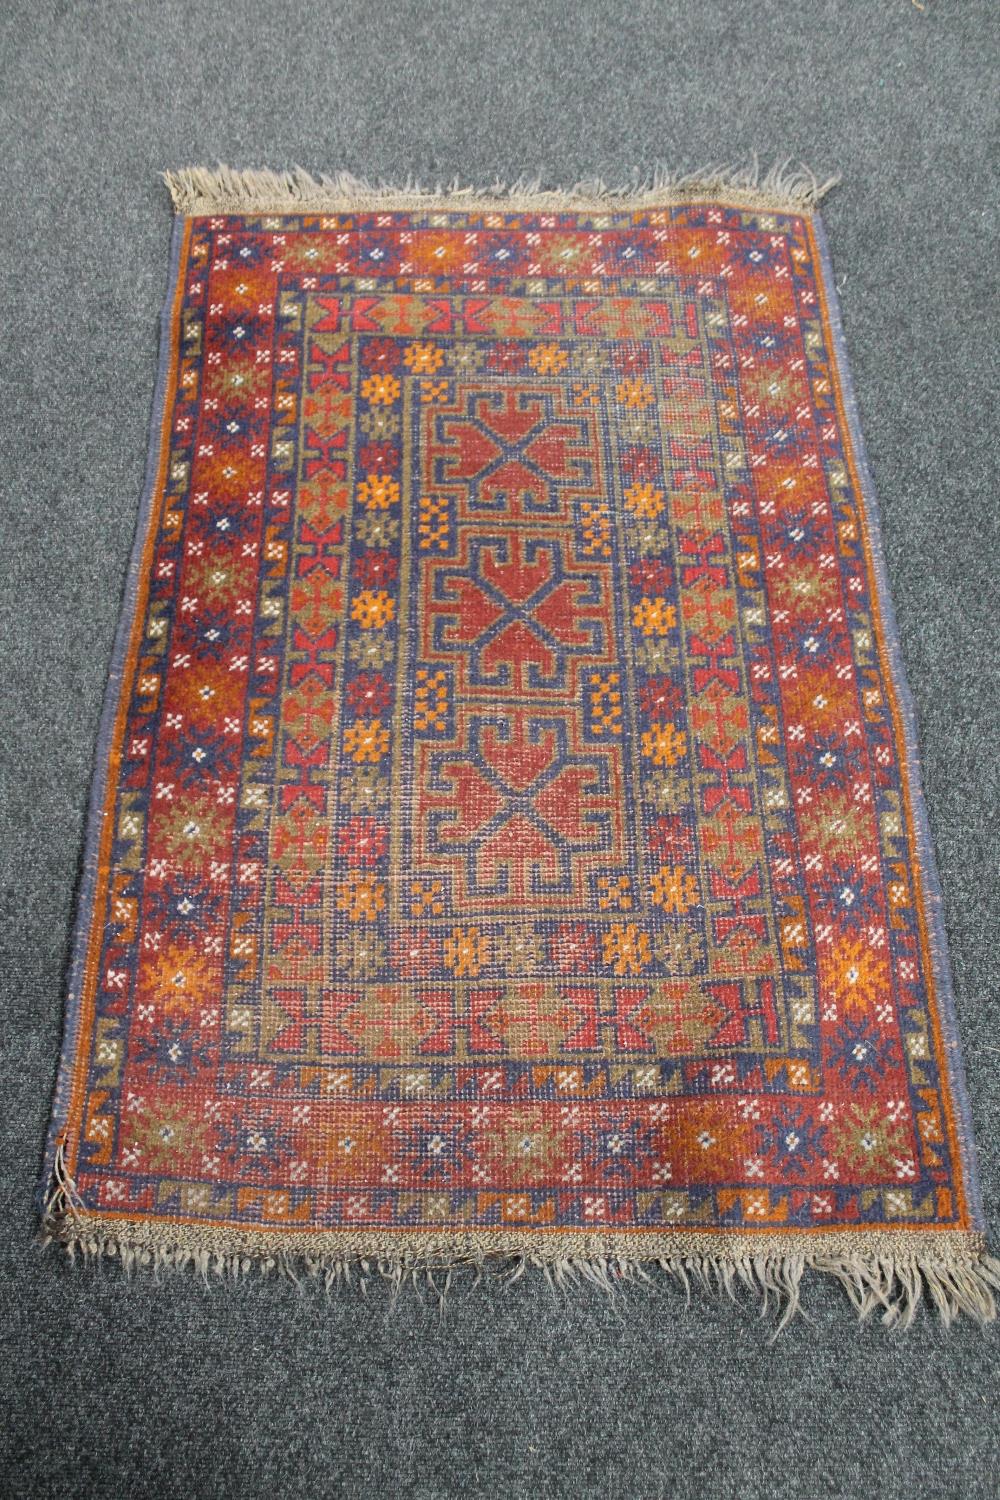 An Afghan rug 137 cm x 86 cm